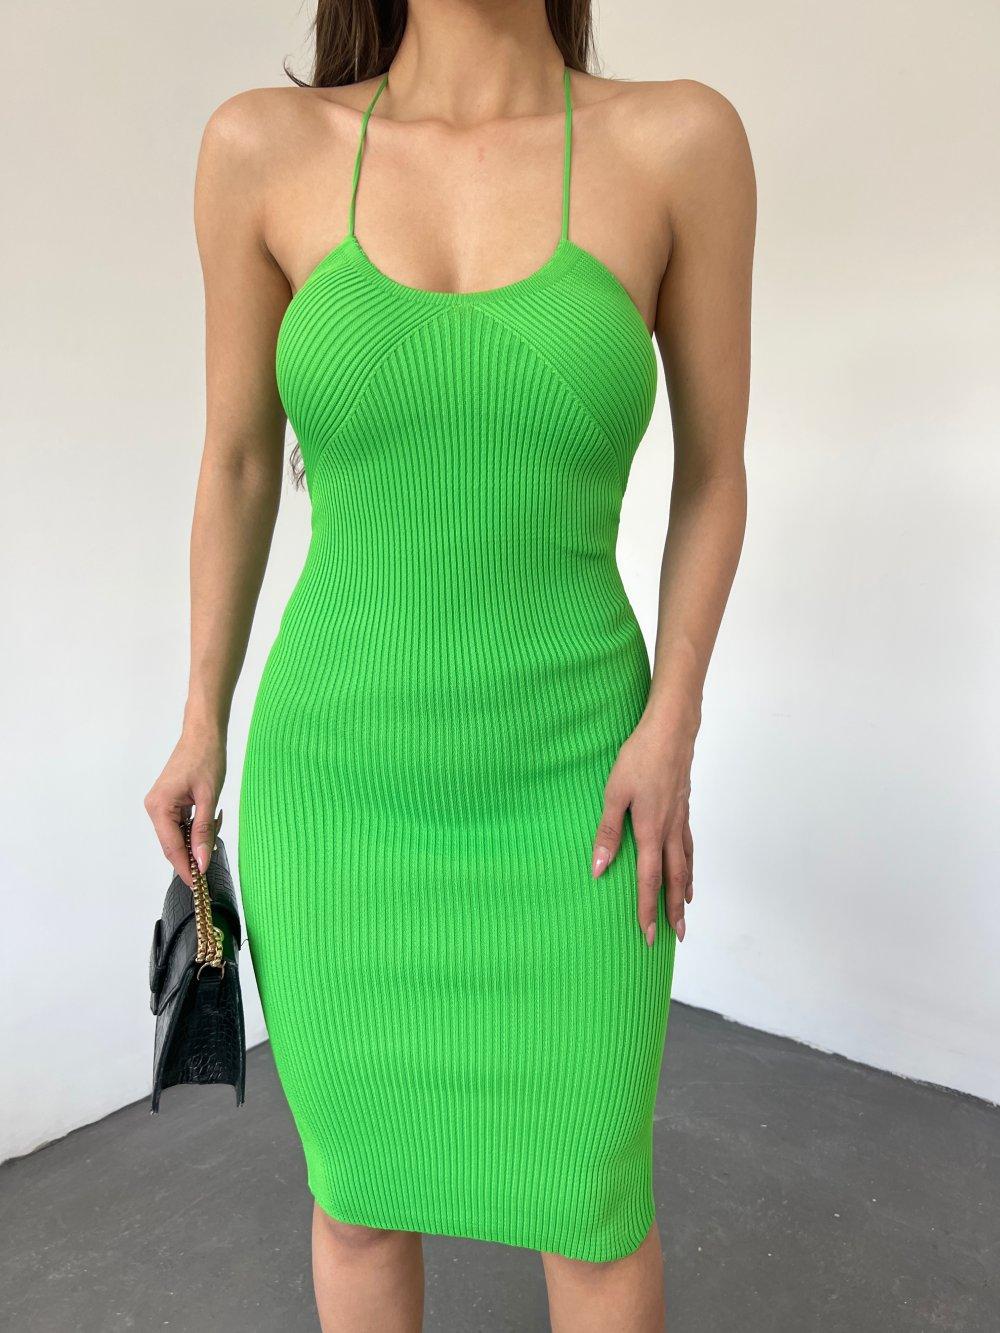 İp Askılı Triko Elbise 7894 Yeşil